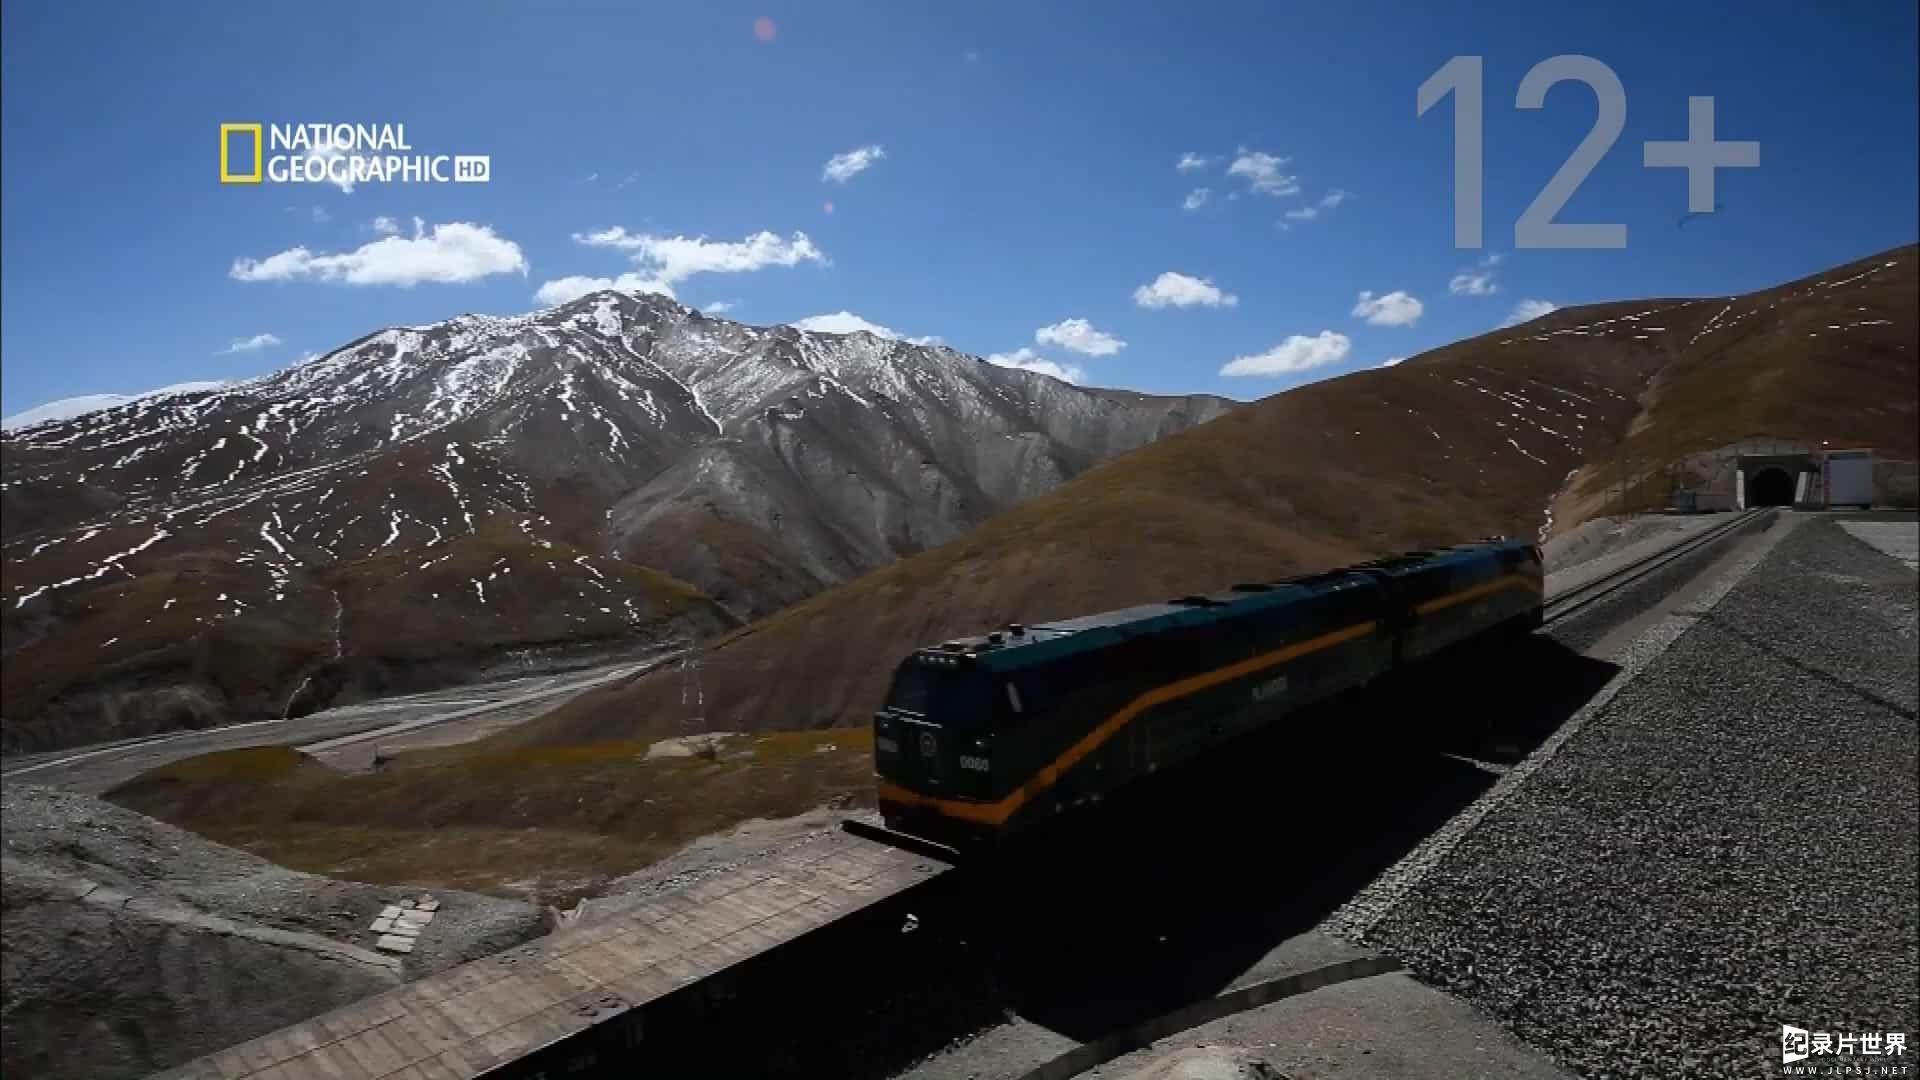  国家地理《伟大工程巡礼：极限铁路 Megastructures: Extreme Railway 2012》06